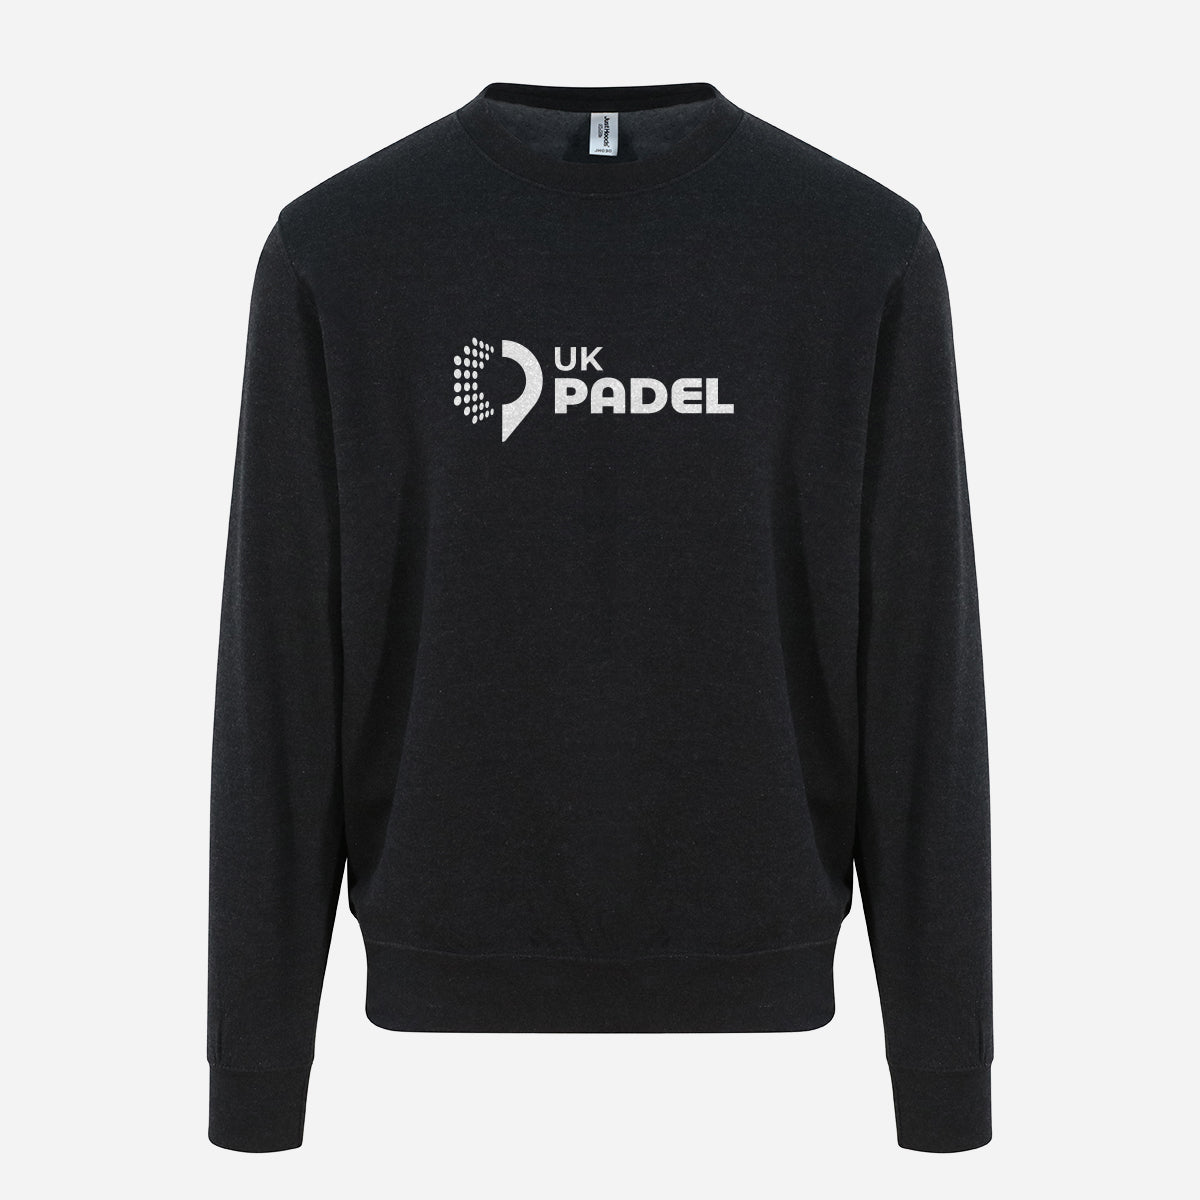 UK Padel sweatshirt big logo